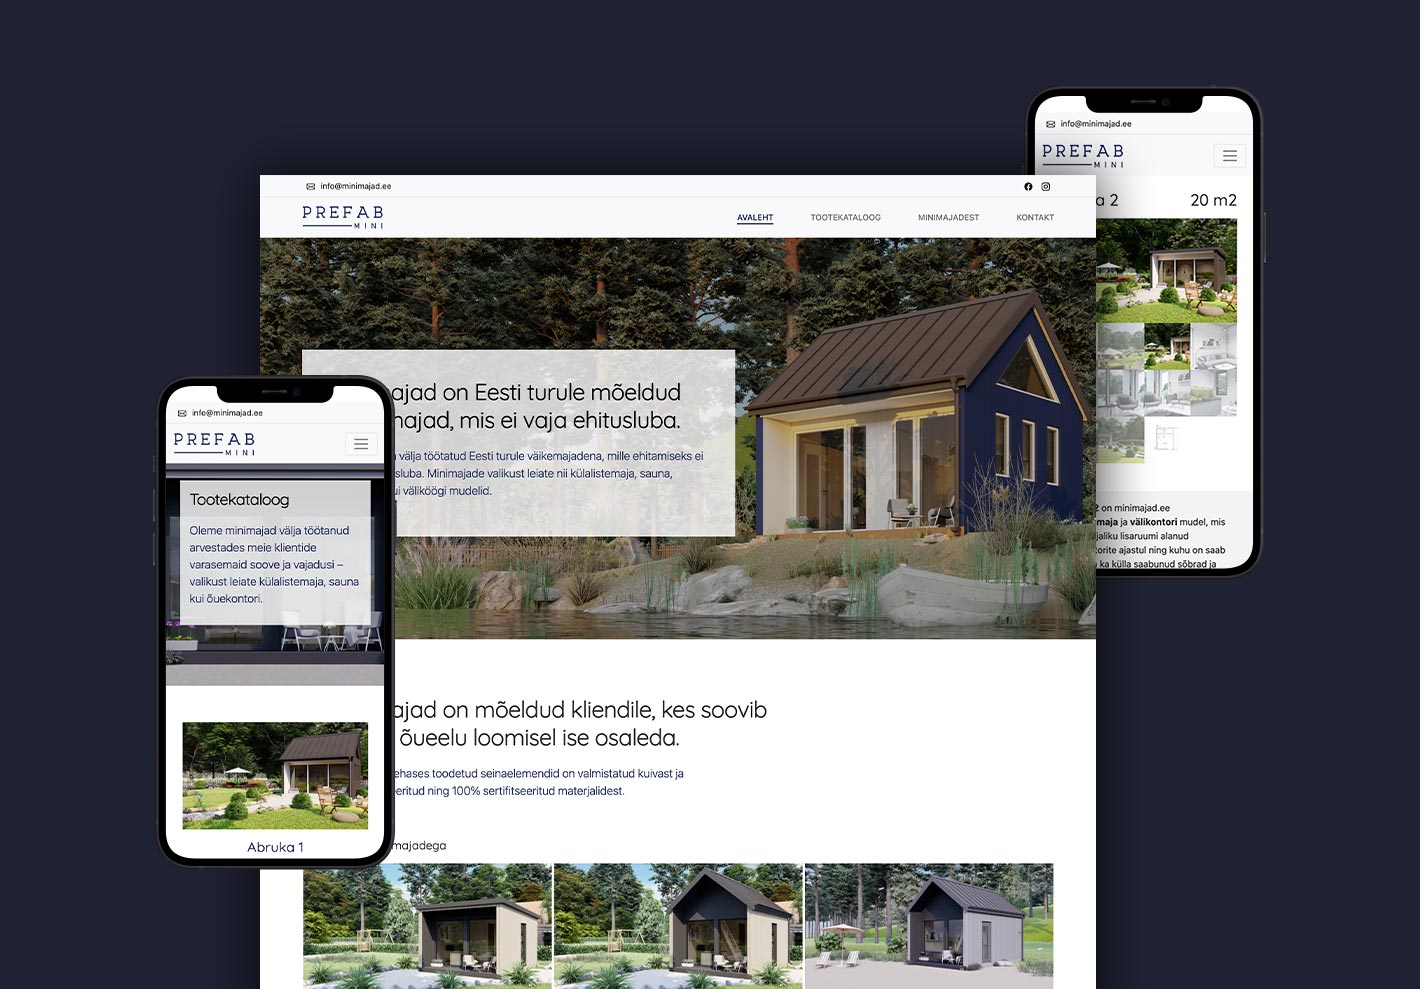 Предпросмотр веб-сайта Minimajad, созданного студией iWeb, специализирующейся на продаже компактных домов